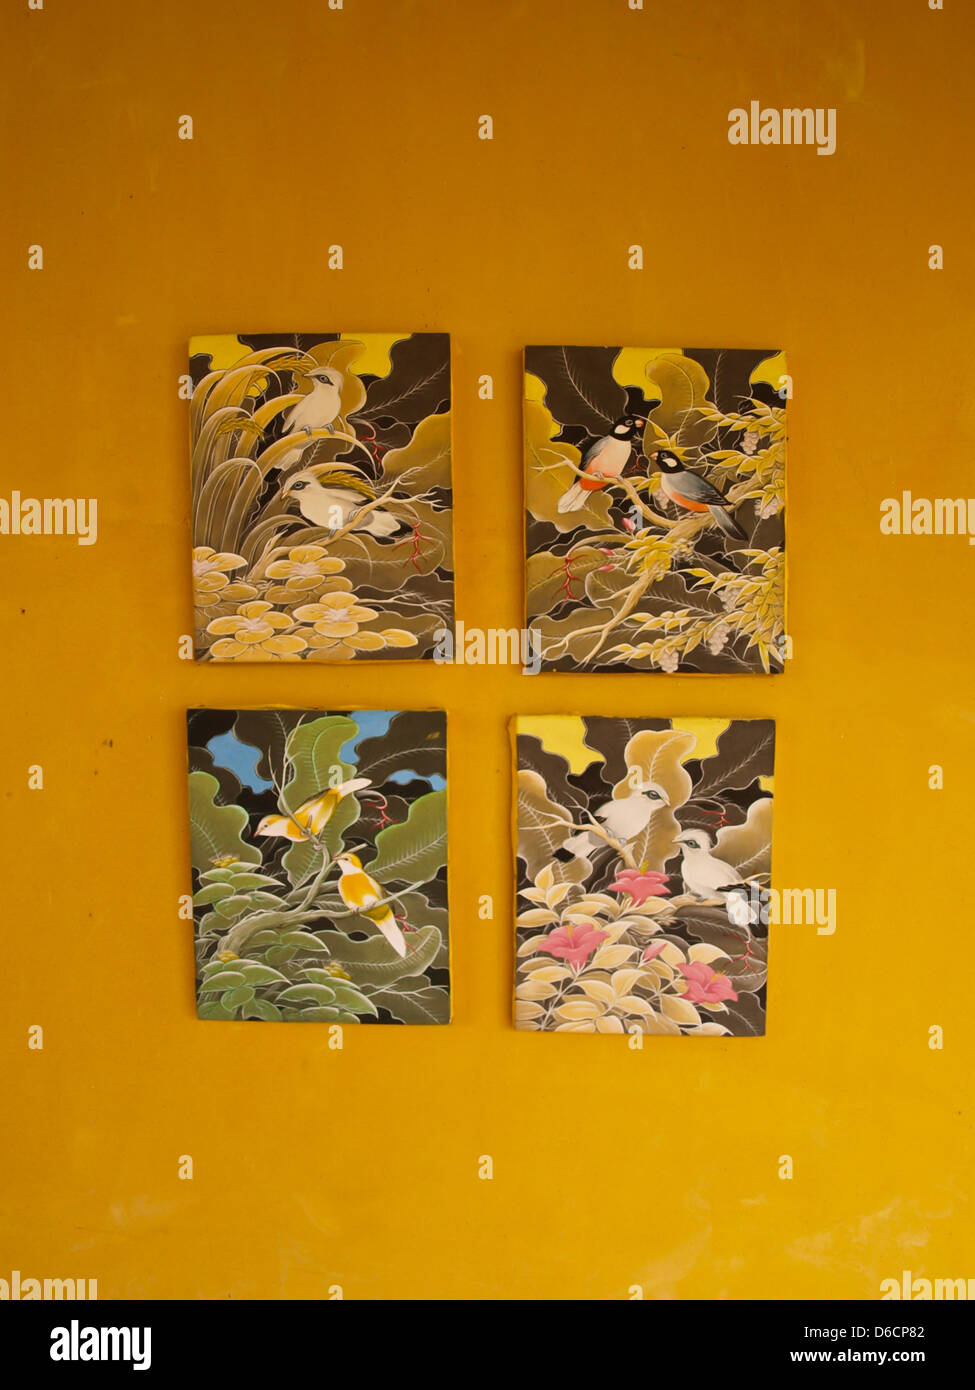 Quattro bird quadri di pittura su parete gialla Foto Stock